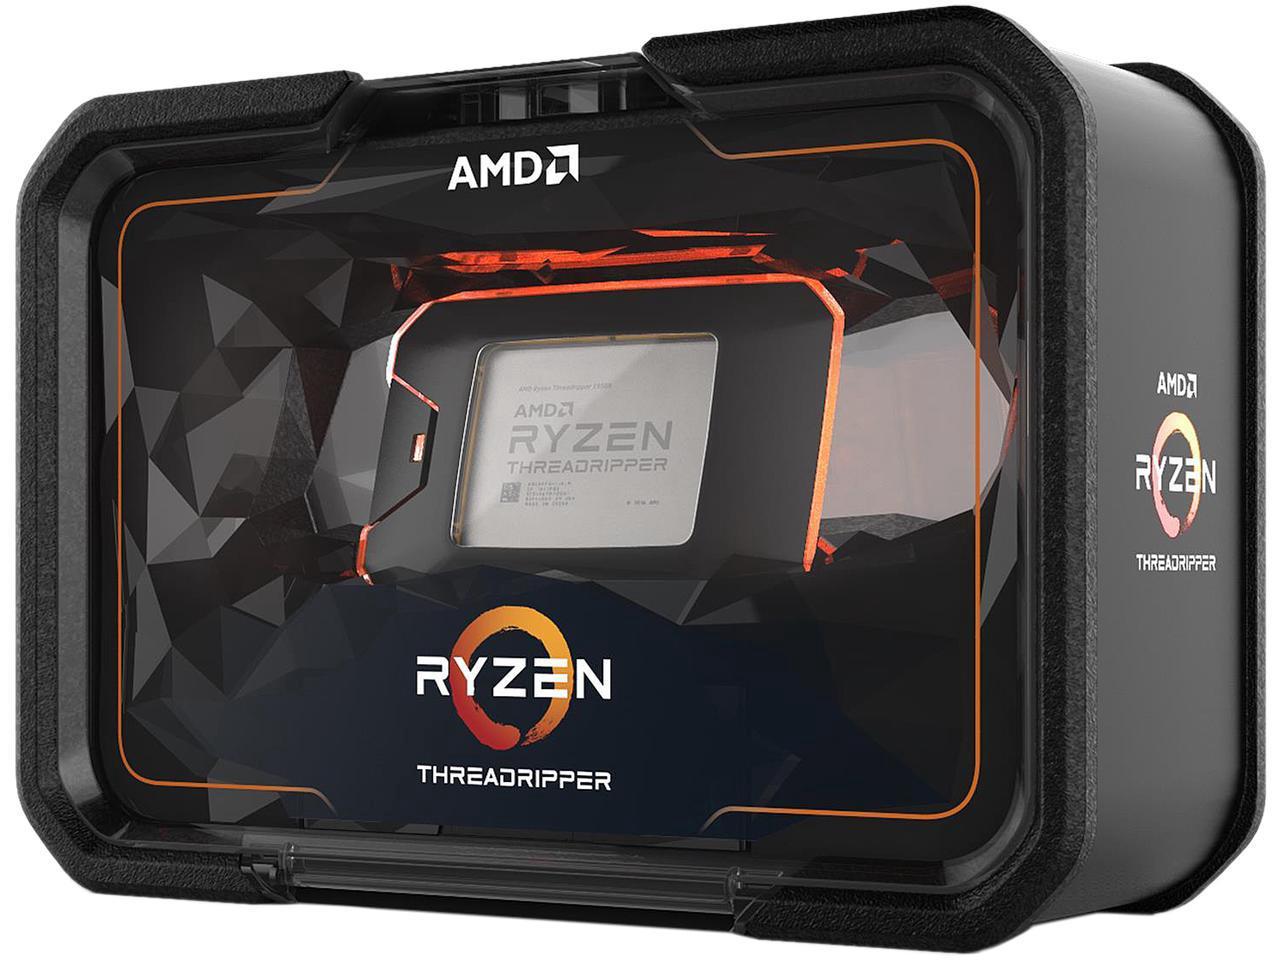 Immagine pubblicata in relazione al seguente contenuto: AMD rivela specifiche, data di lancio e prezzo dei nuovi Ryzen Threadripper | Nome immagine: news28527_AMD-Ryzen-Threadripper-2nd-Generation_1.jpg